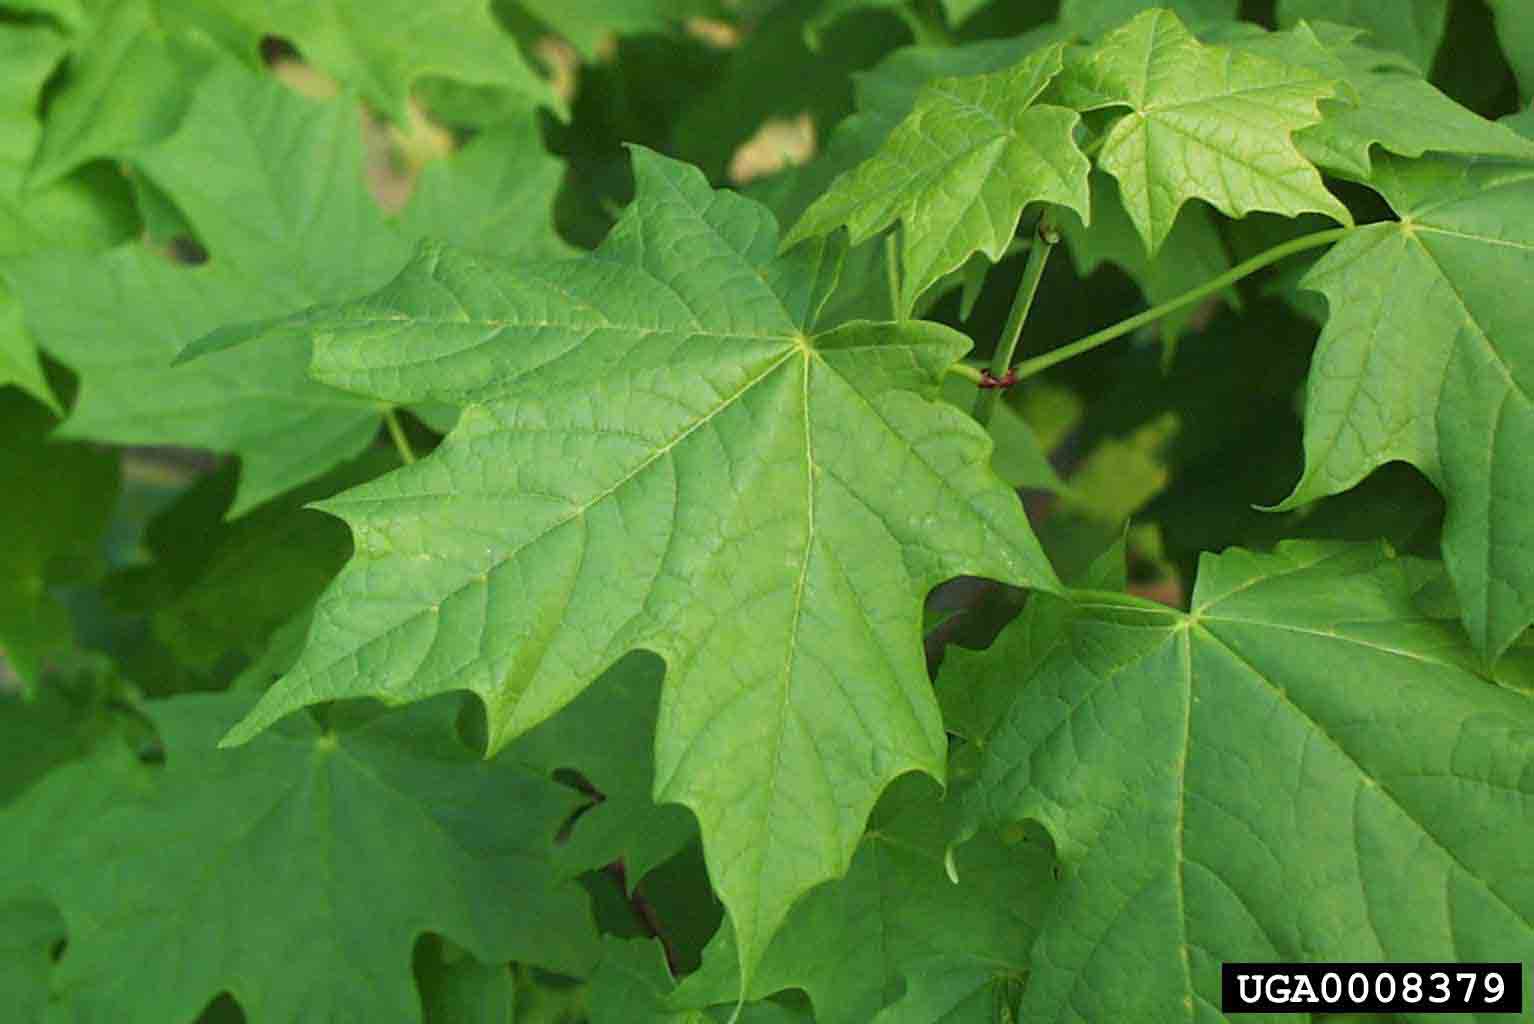 Sugar maple leaf, upper side